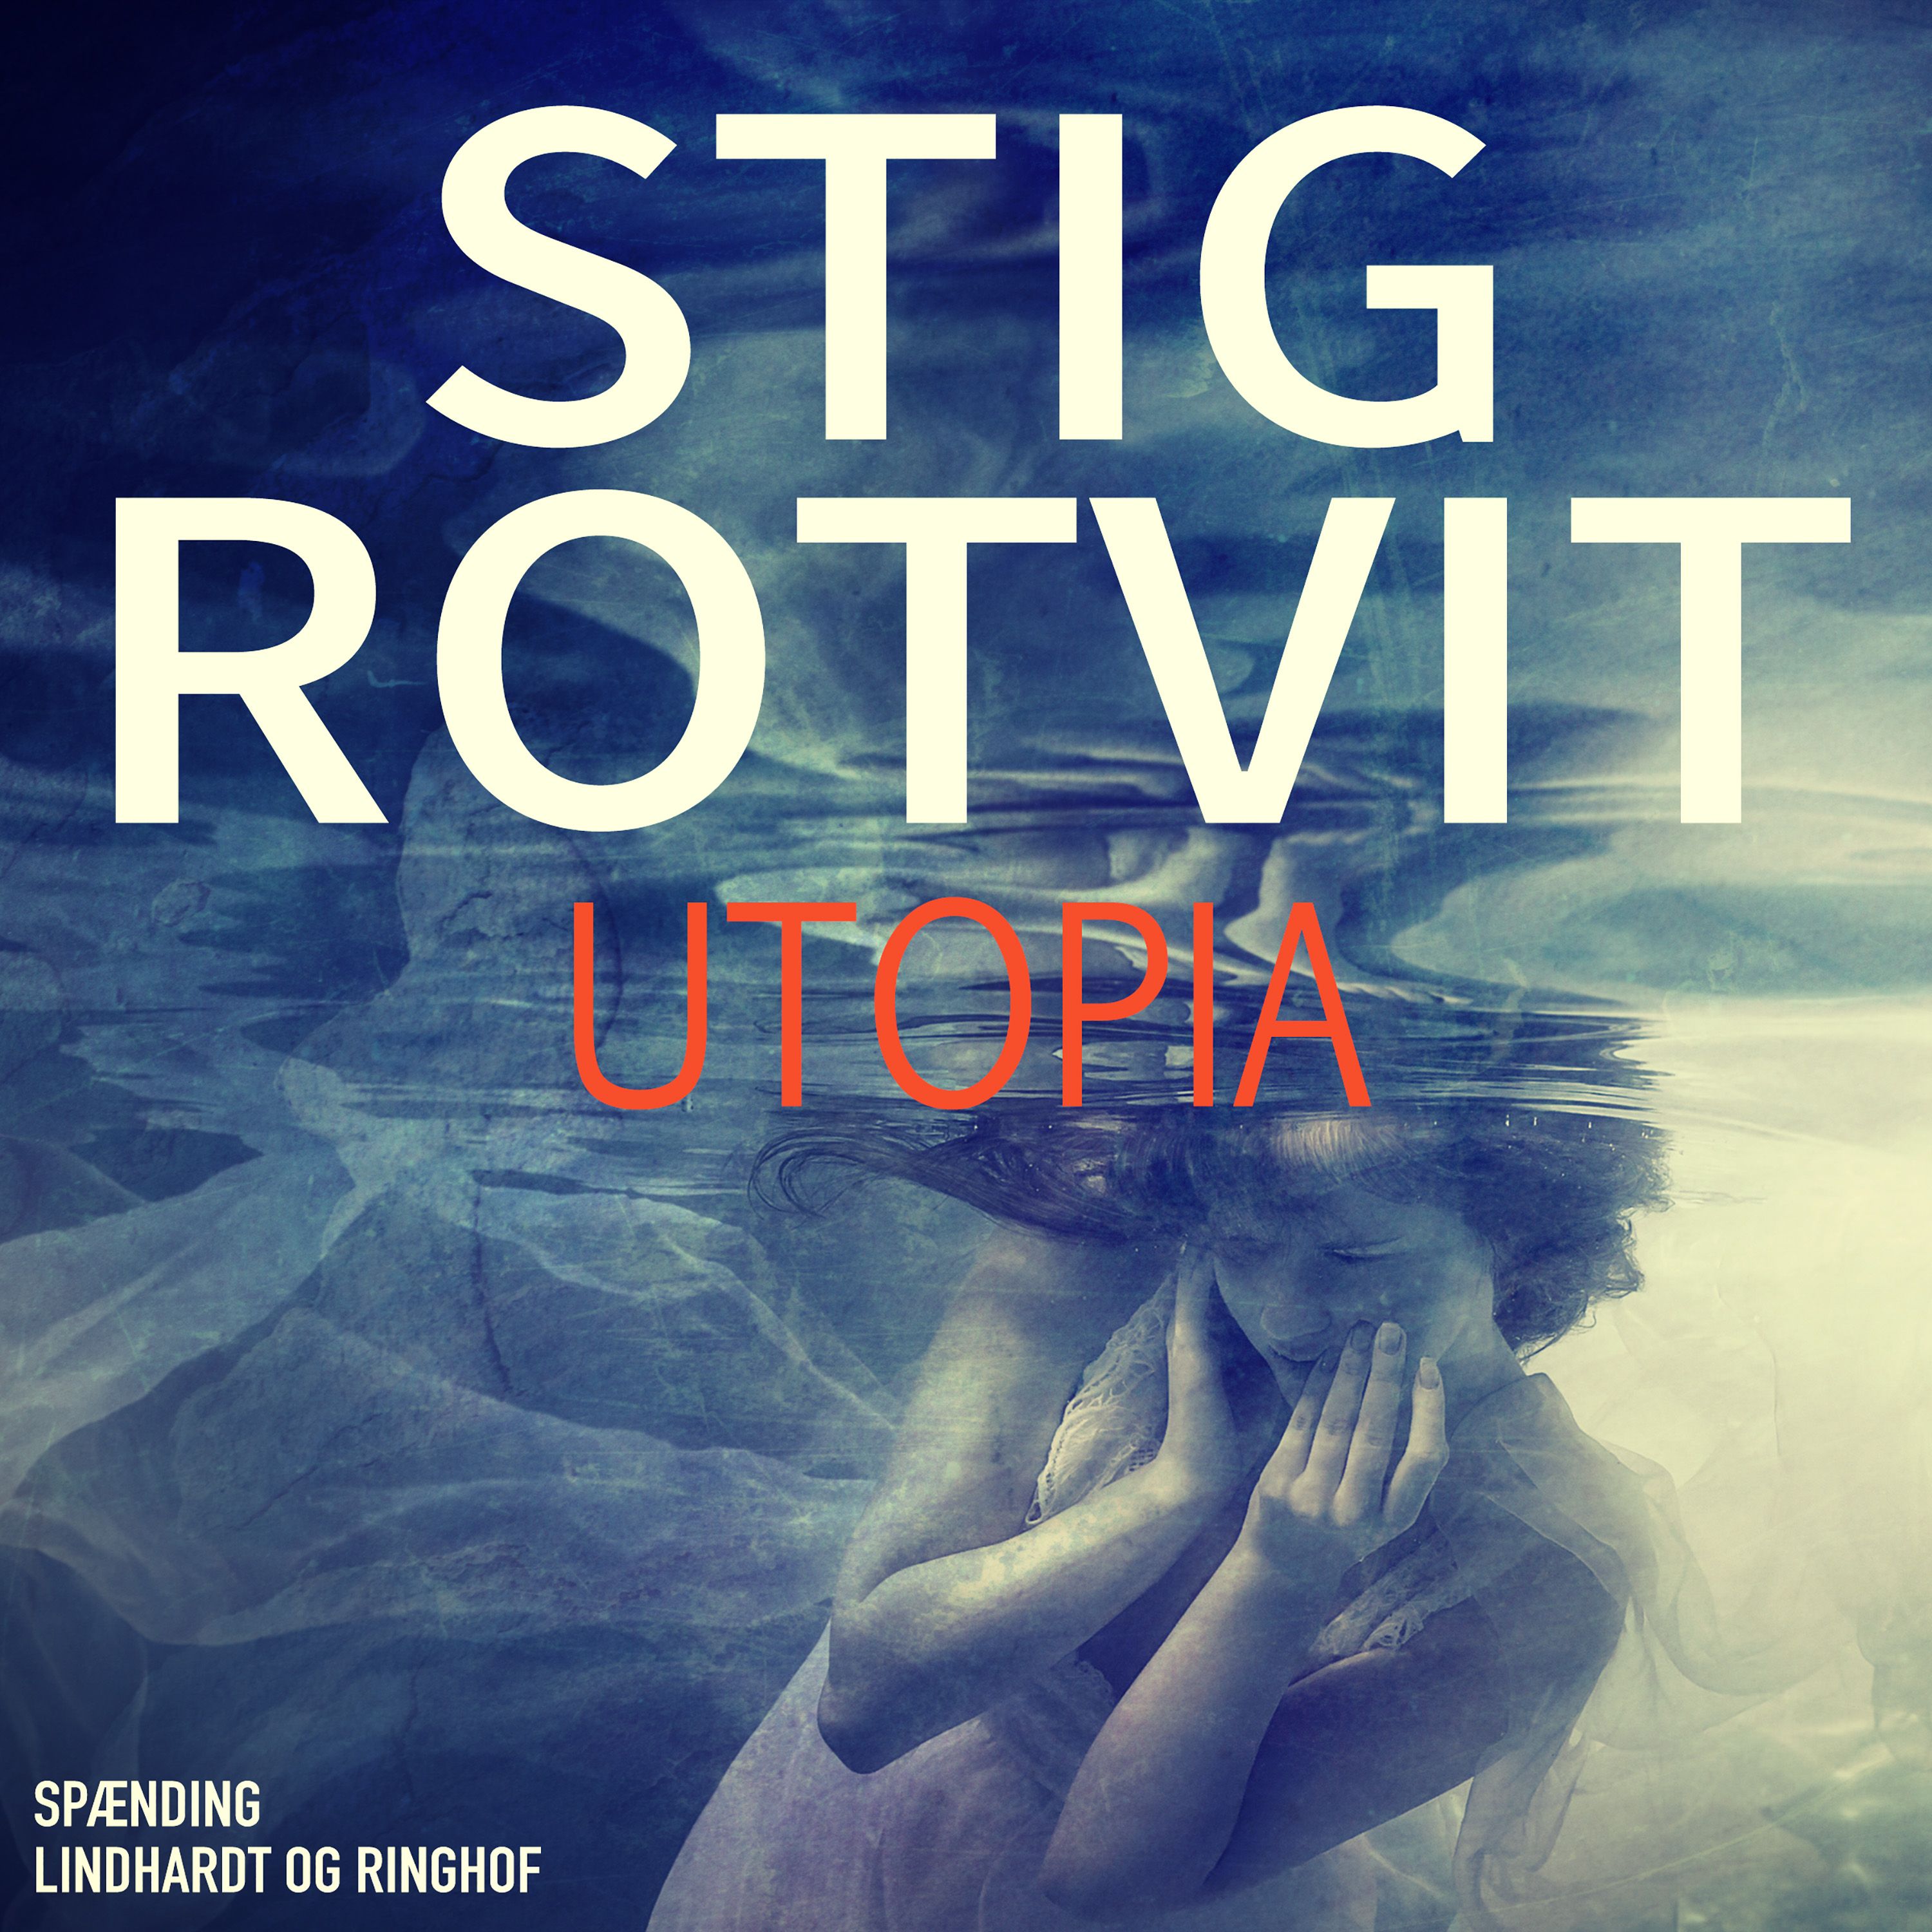 Utopia, ljudbok av Stig Rotvit